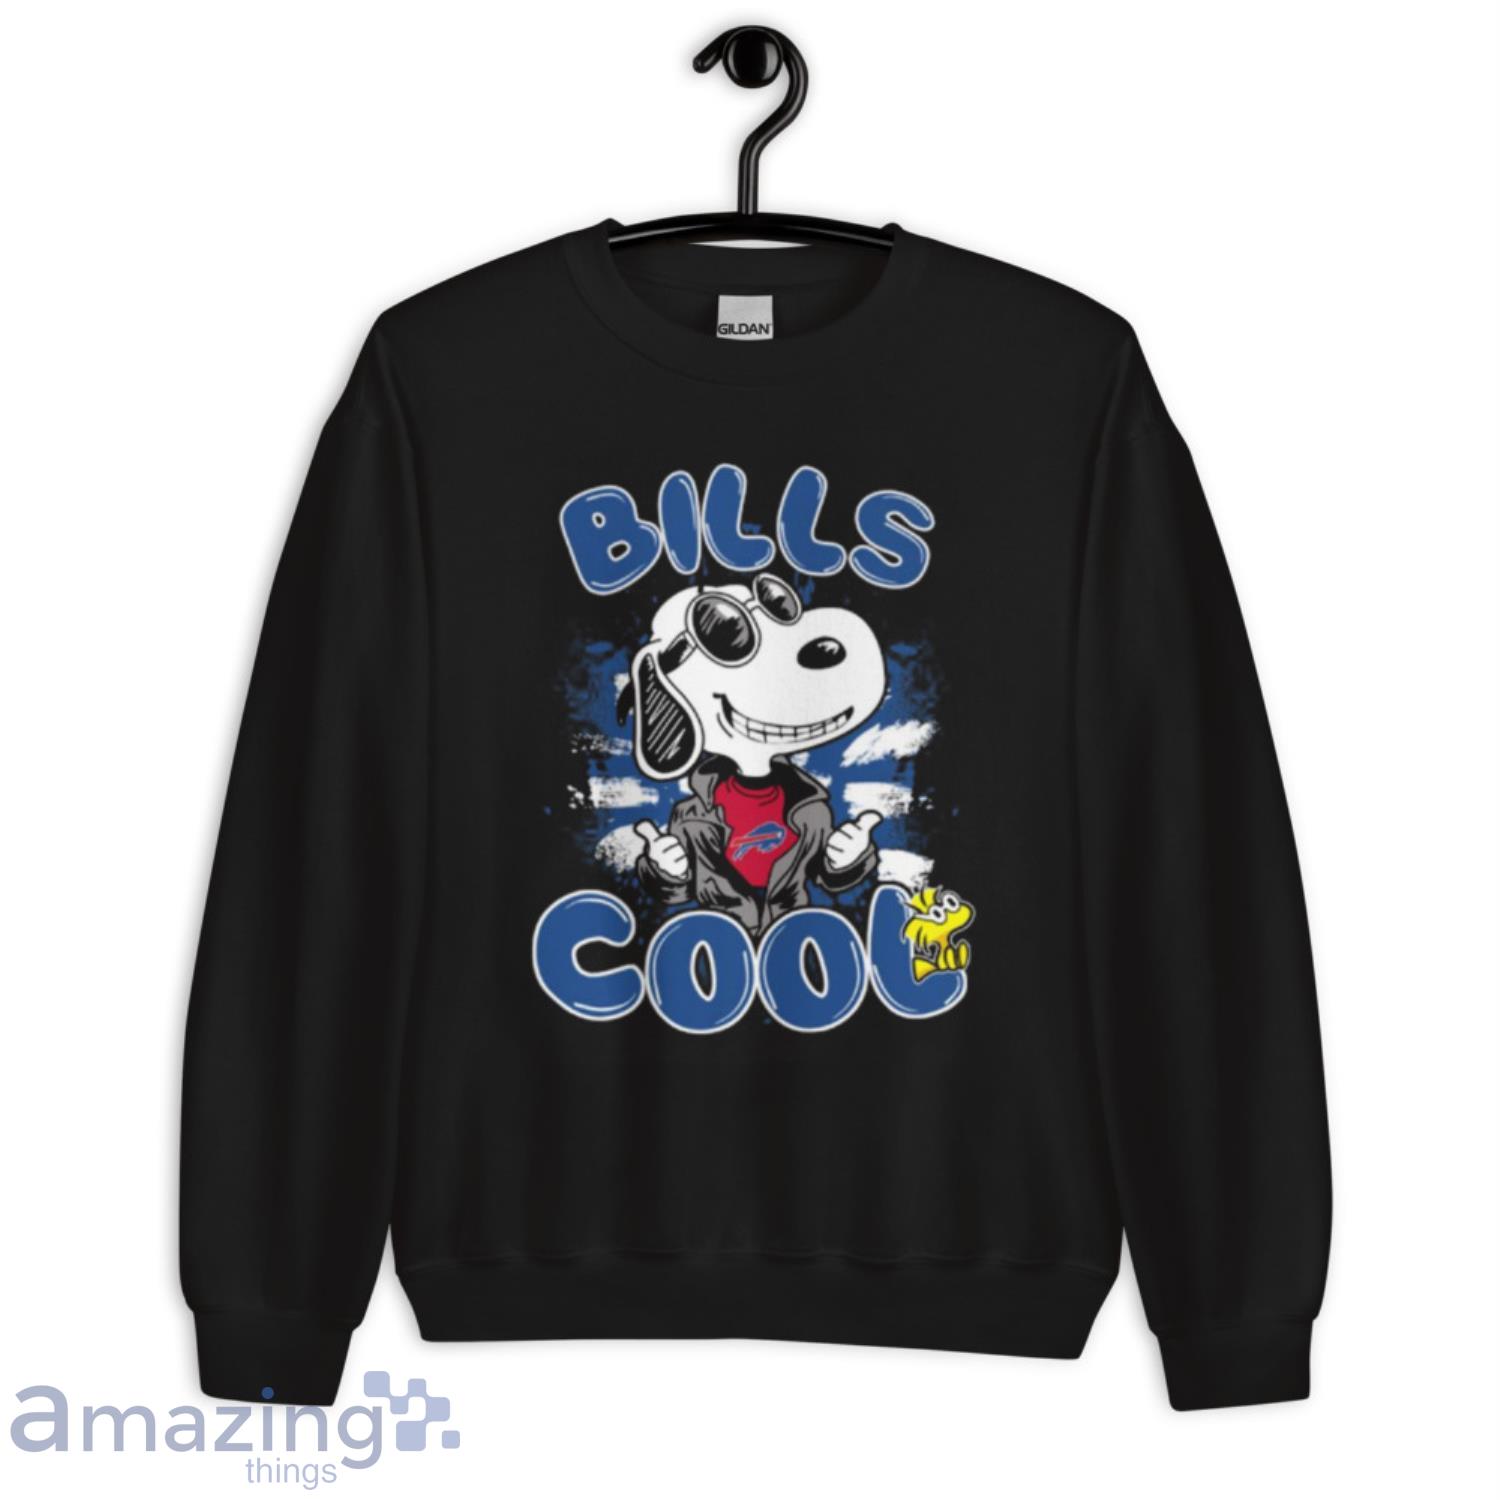 buffalo bills cartoon shirt